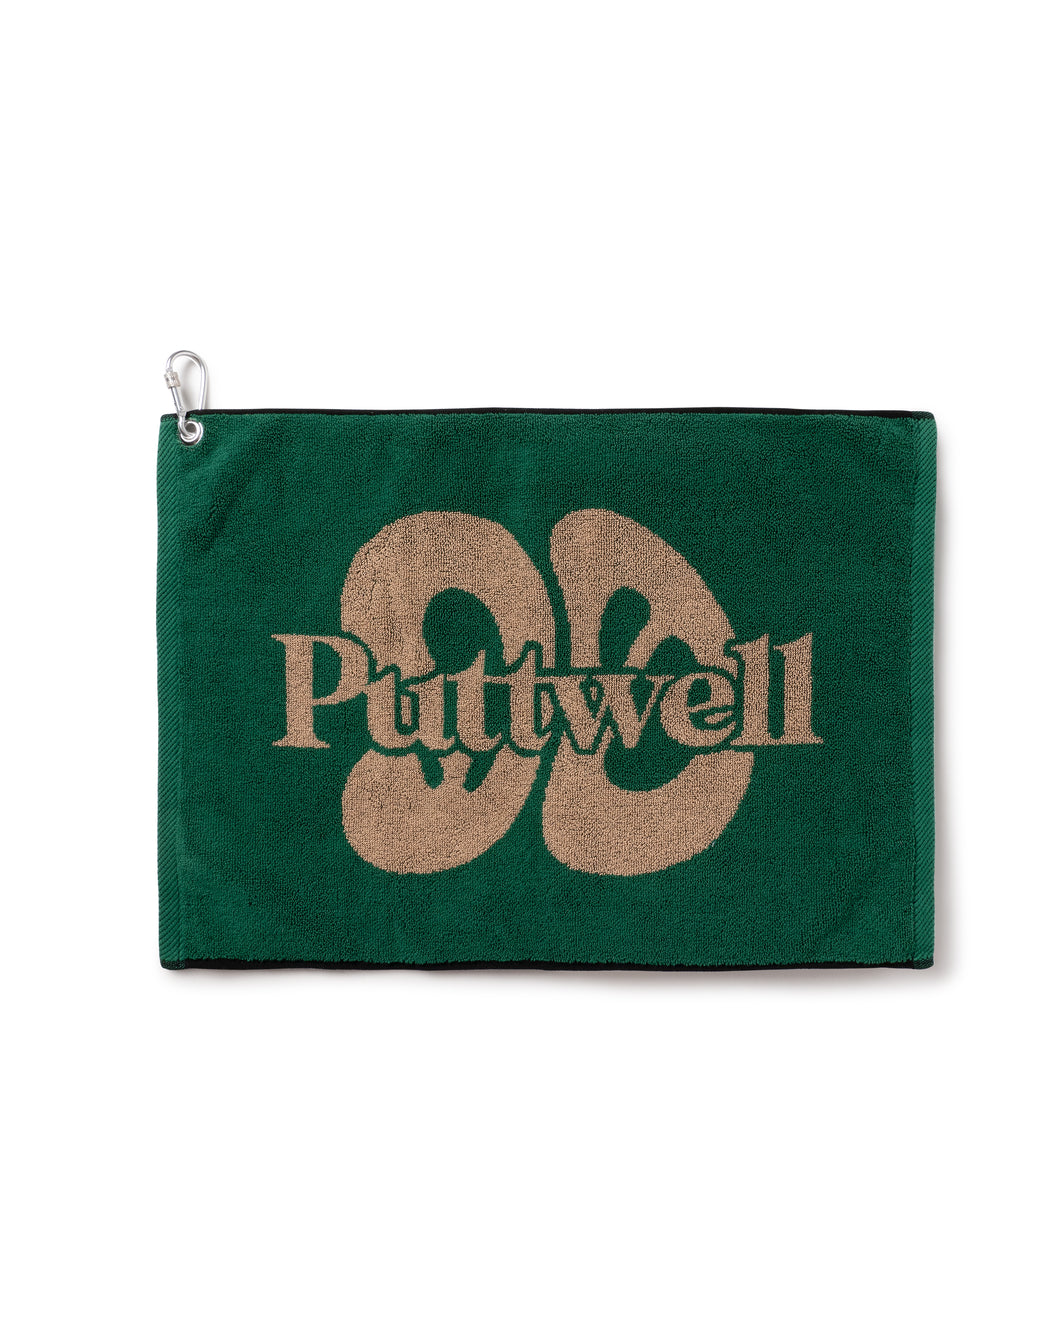 Mid 90s Club × Puttwell Weekend Boys Golf Towel